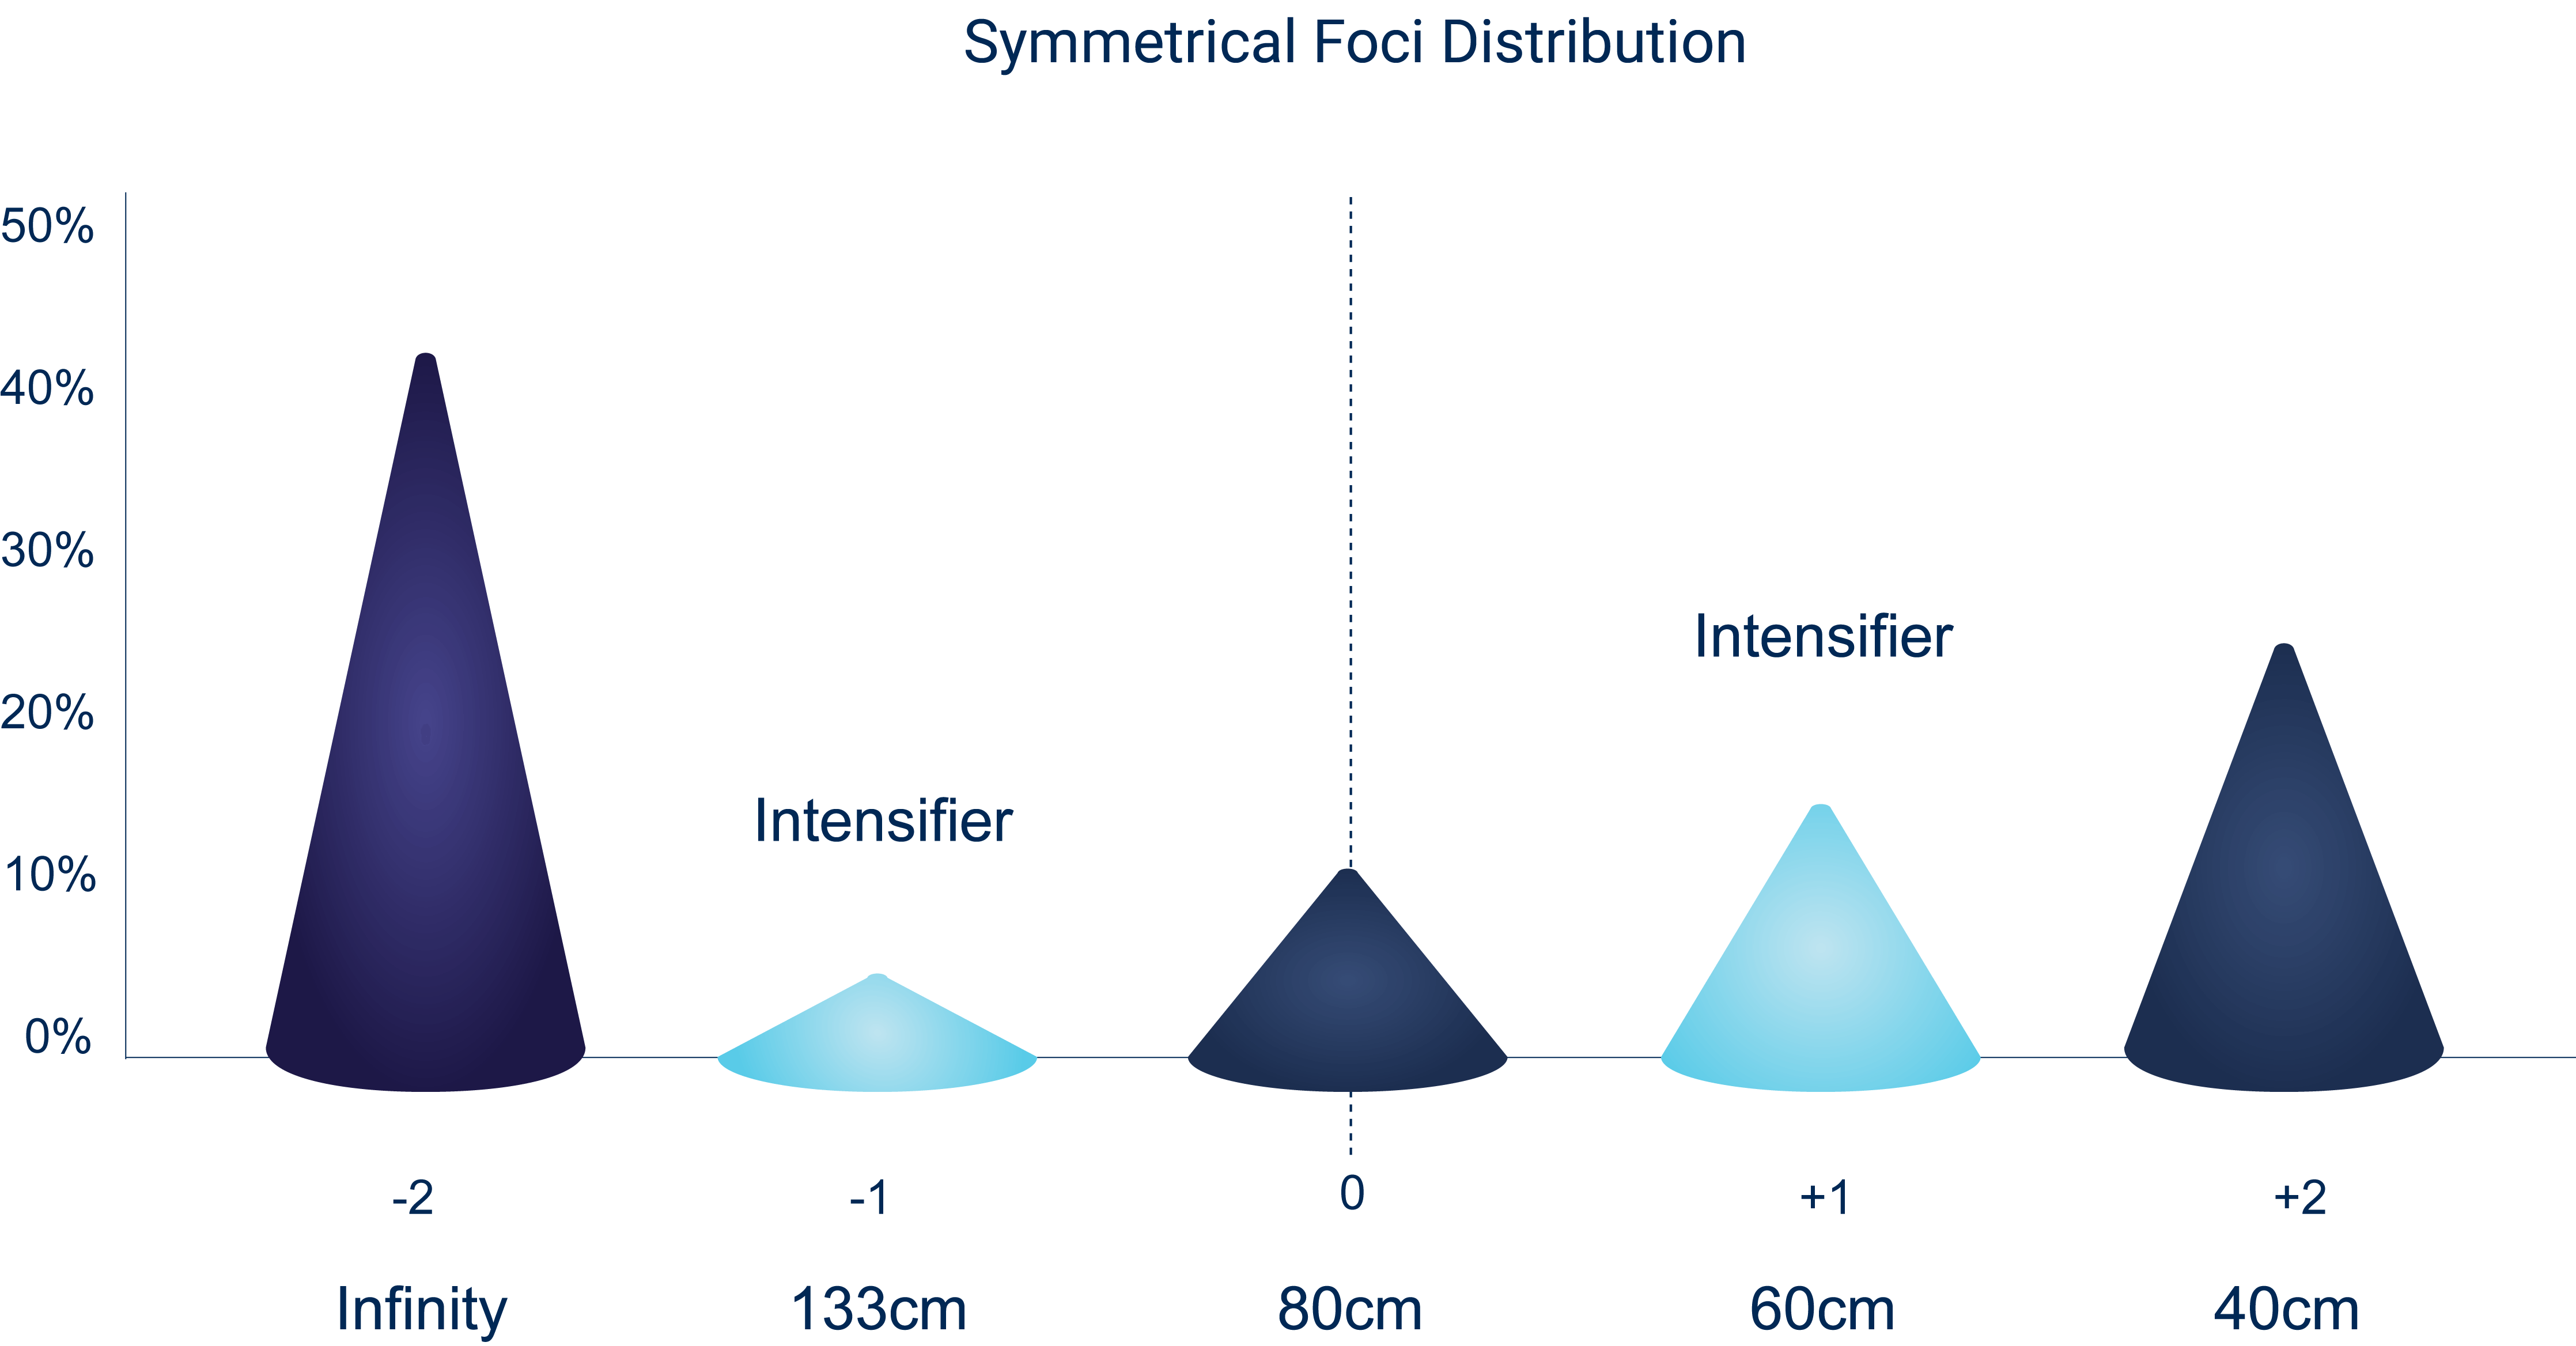 Symmetric foci distribution